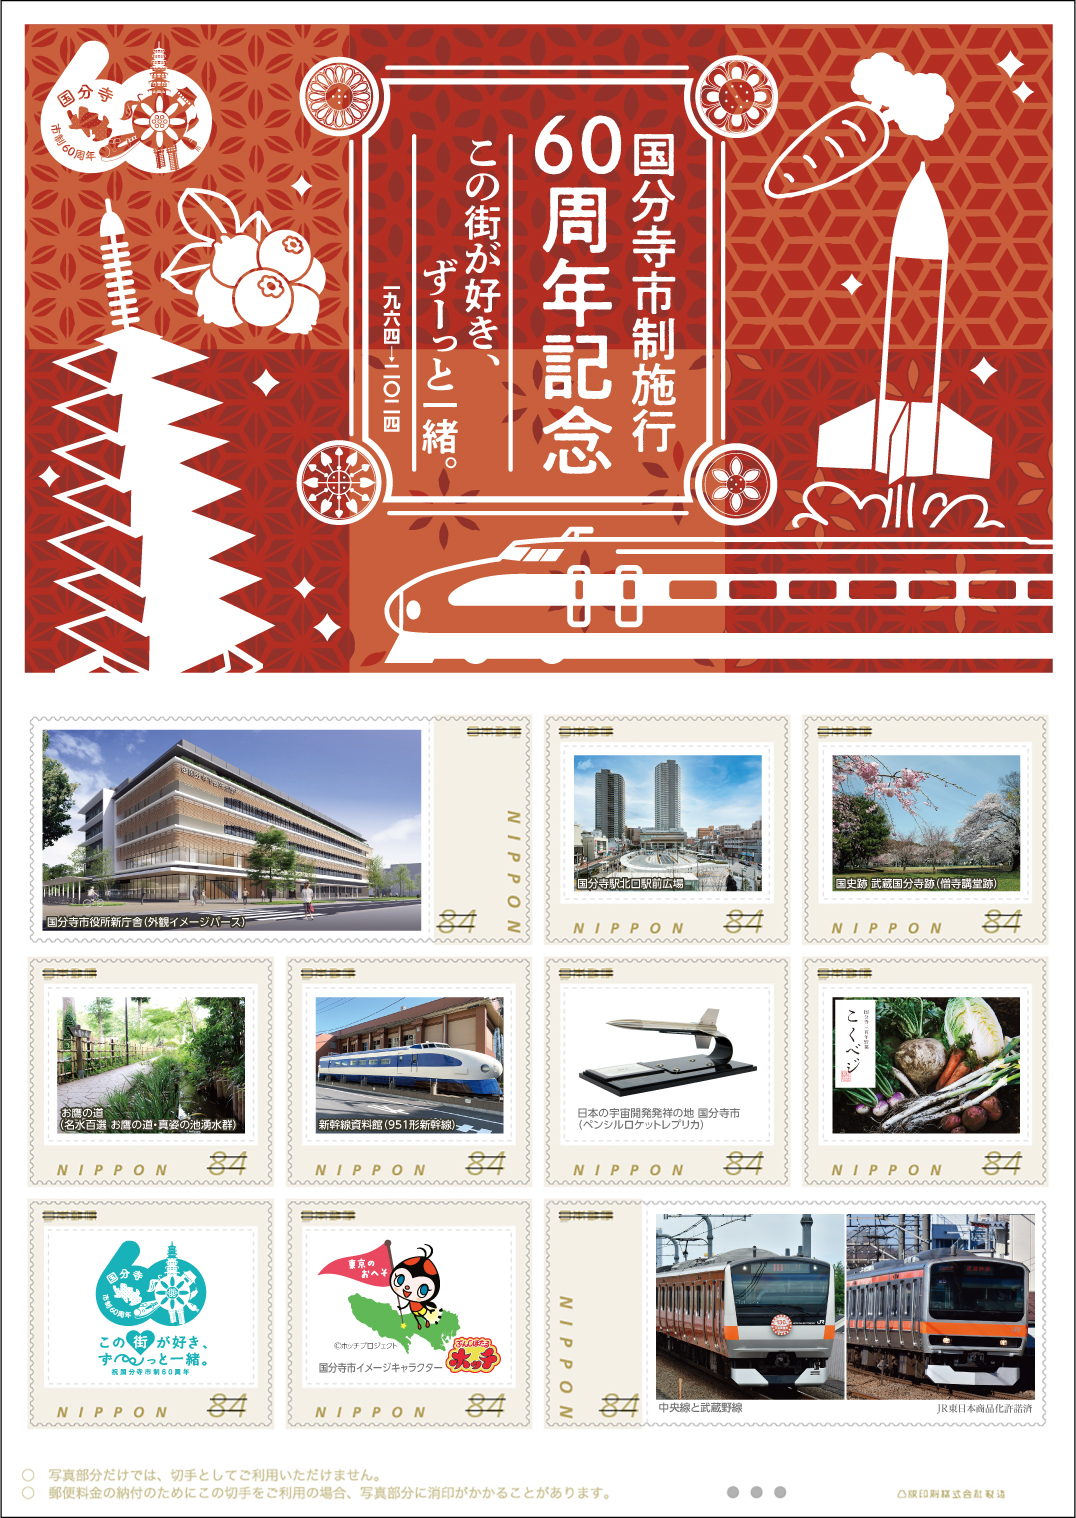 オリジナル フレーム切手「国分寺市制施行60周年記念」の販売開始